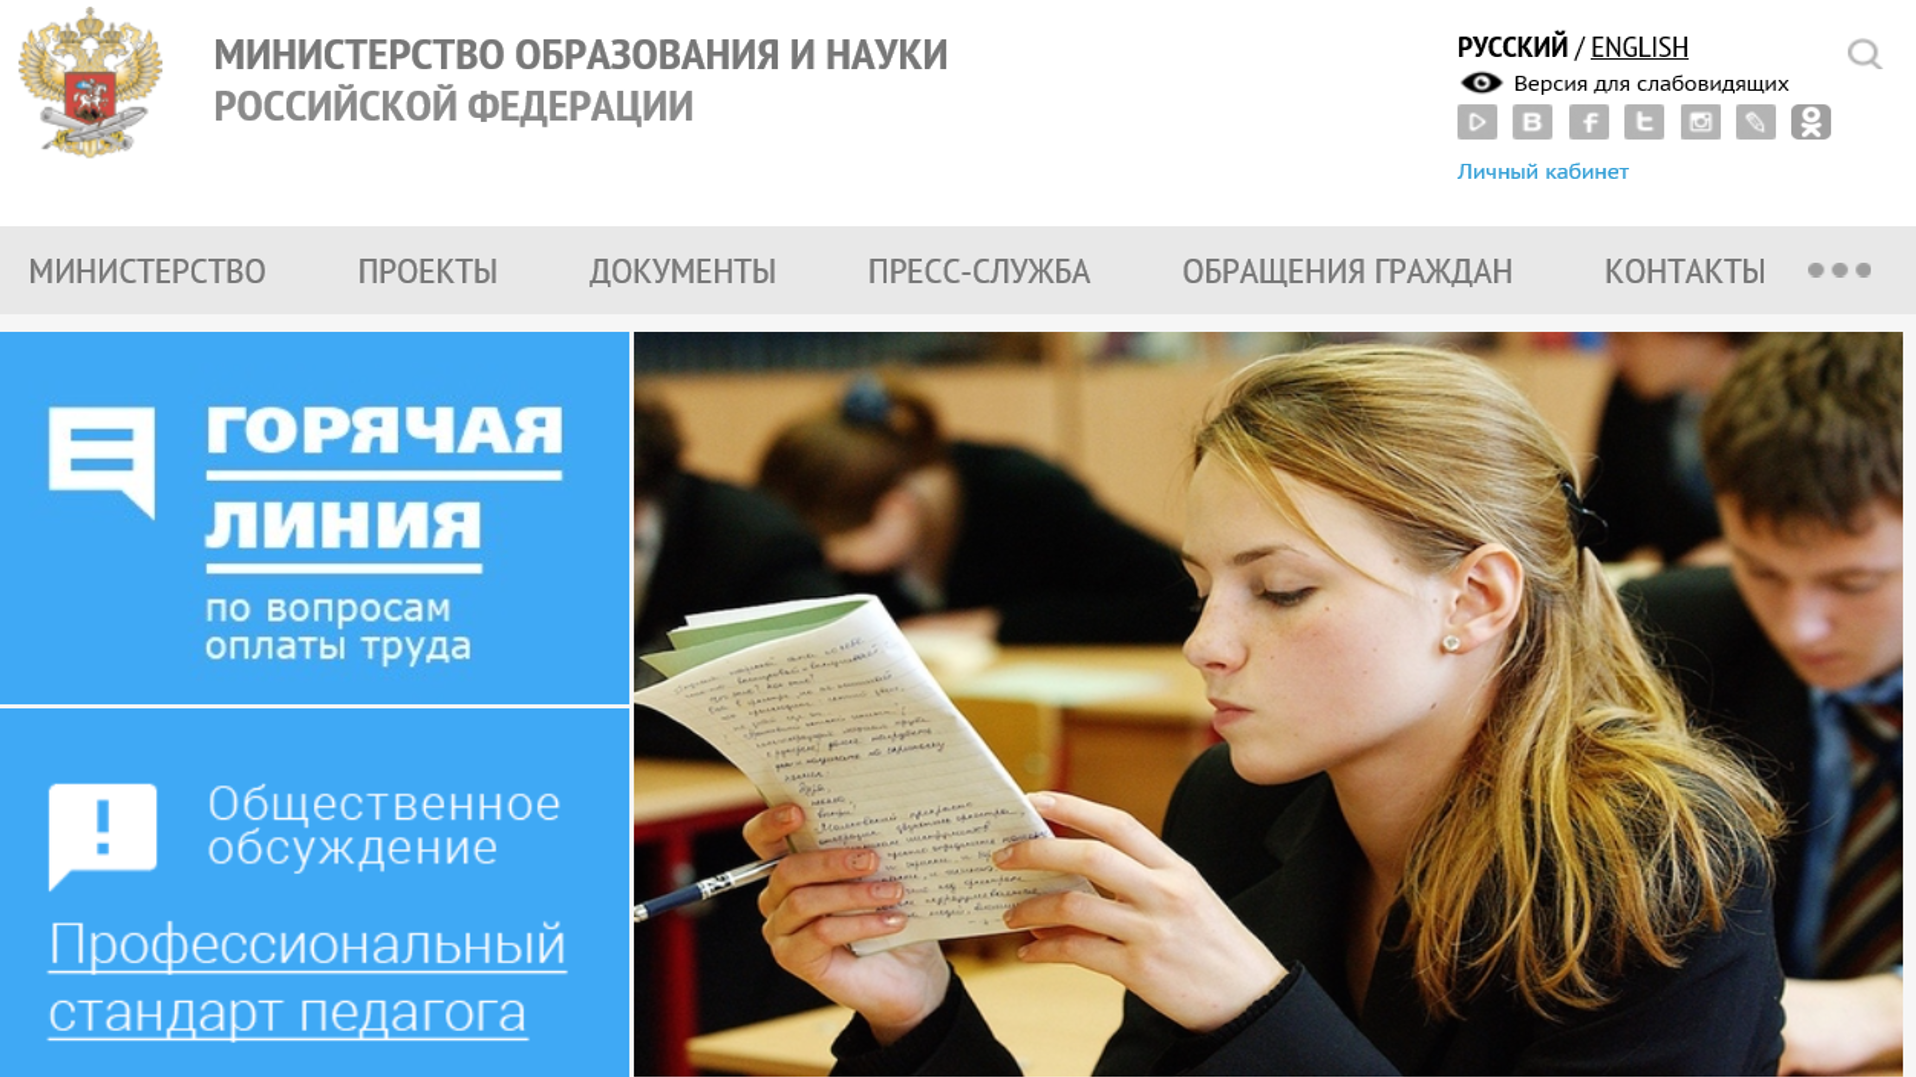 Всероссийская конференция по обсуждению содержания профессионального стандарта педагога